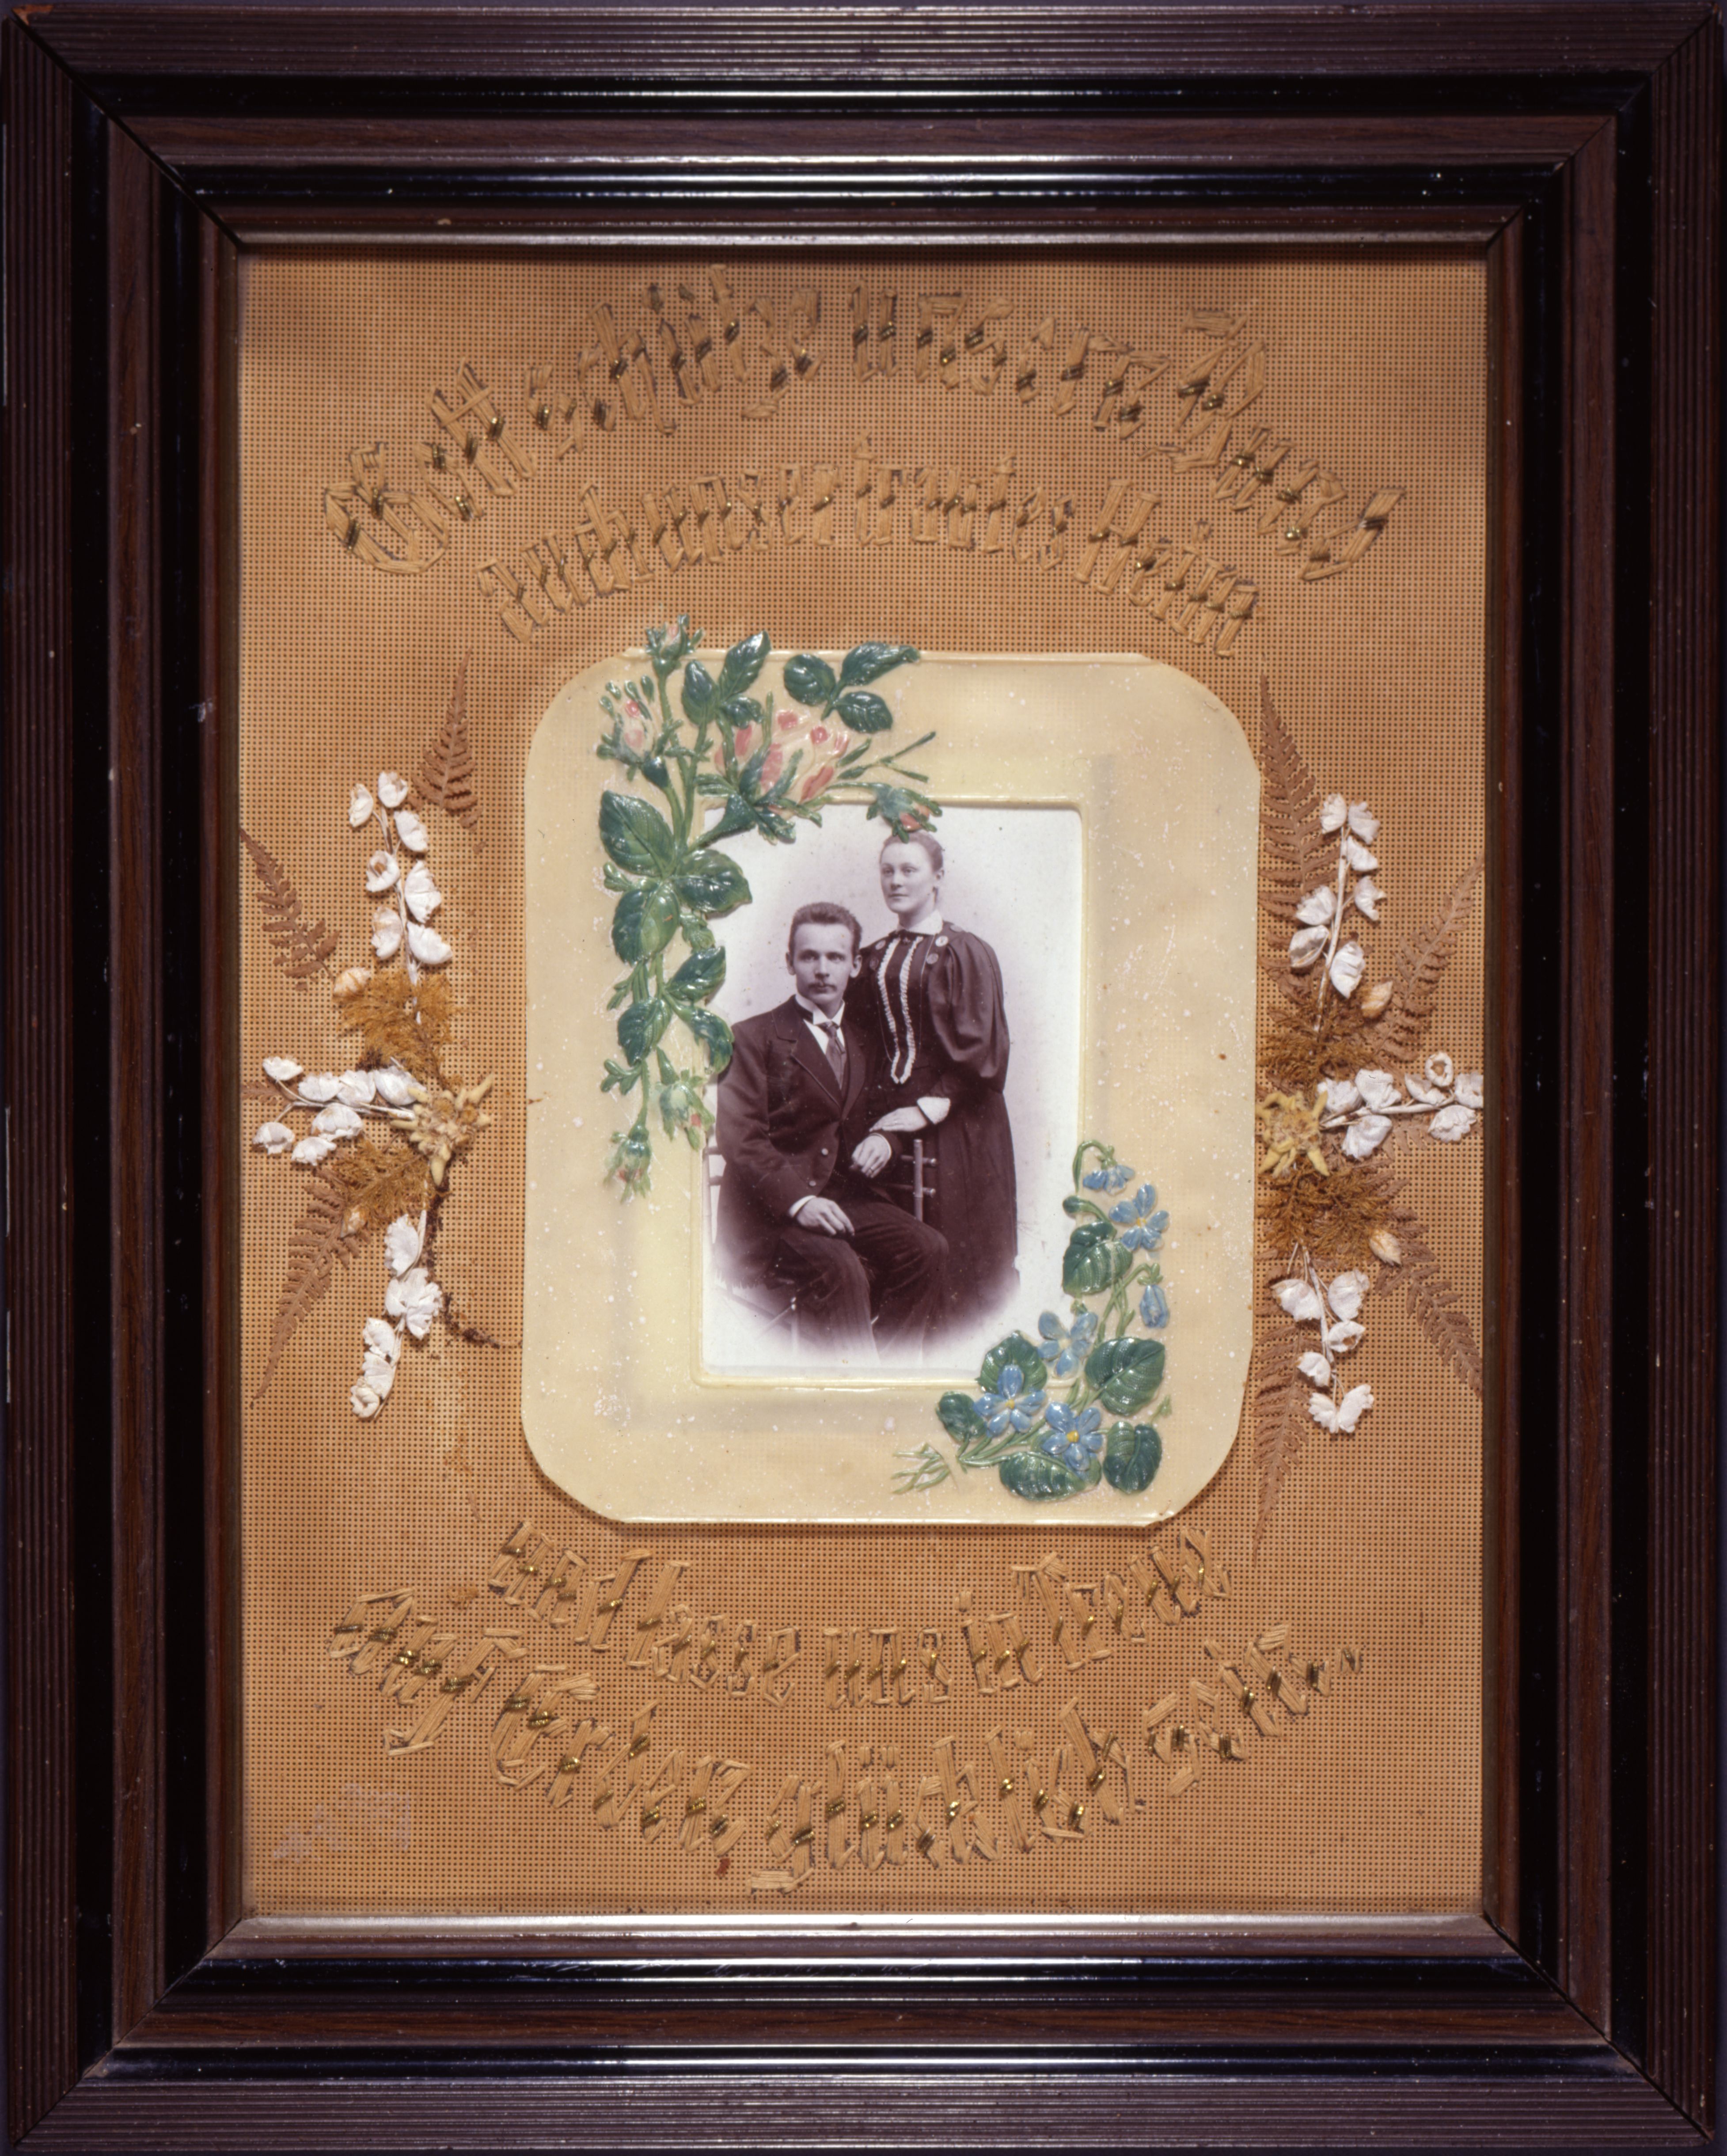 Erinnerungsbild an die Hochzeit, um 1900